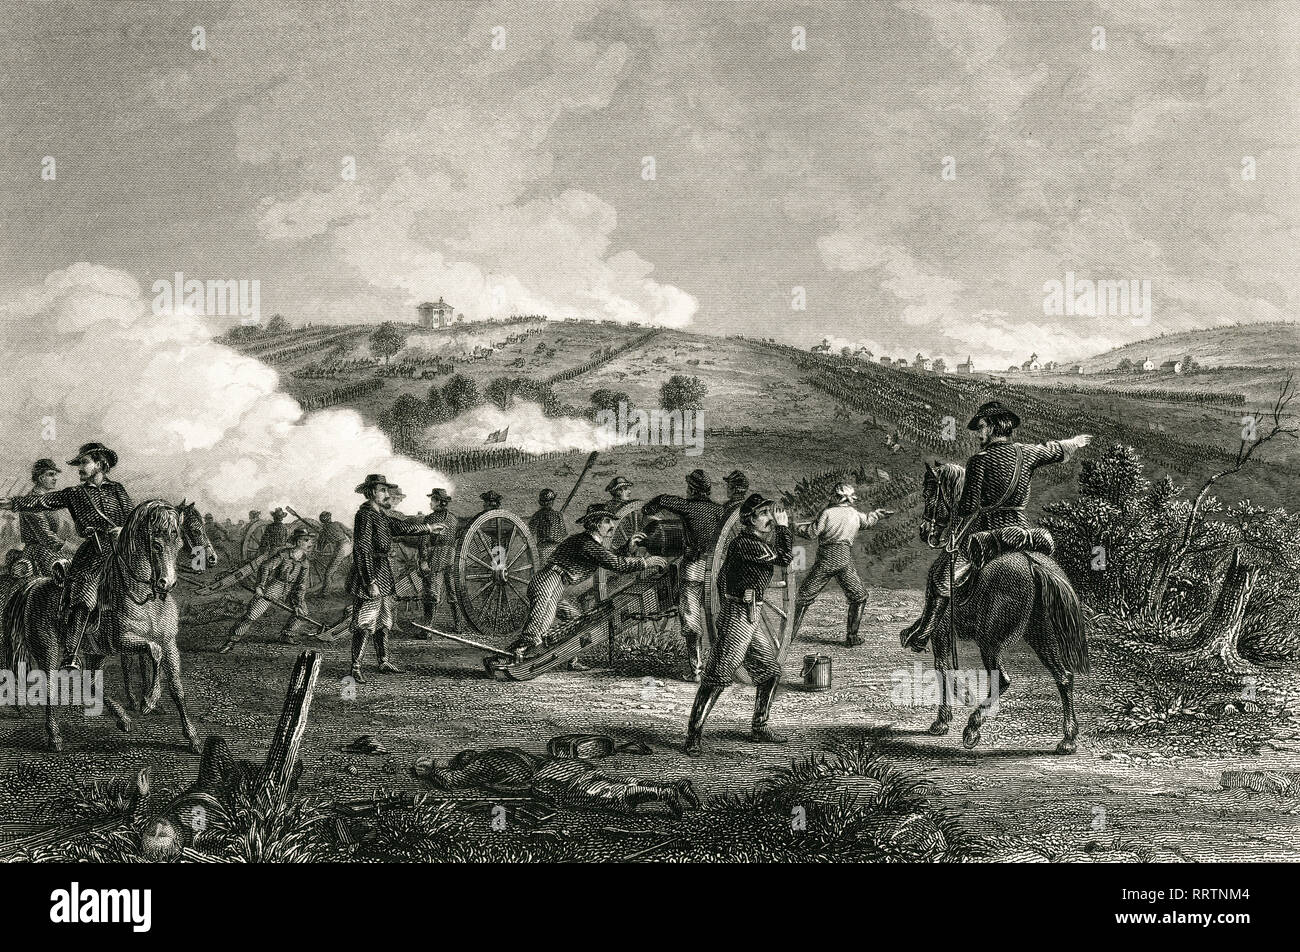 Guerra civile americana, Battaglia di Gettysburg, PA. Incisione in acciaio di J.R. Chapin, 1865 Foto Stock